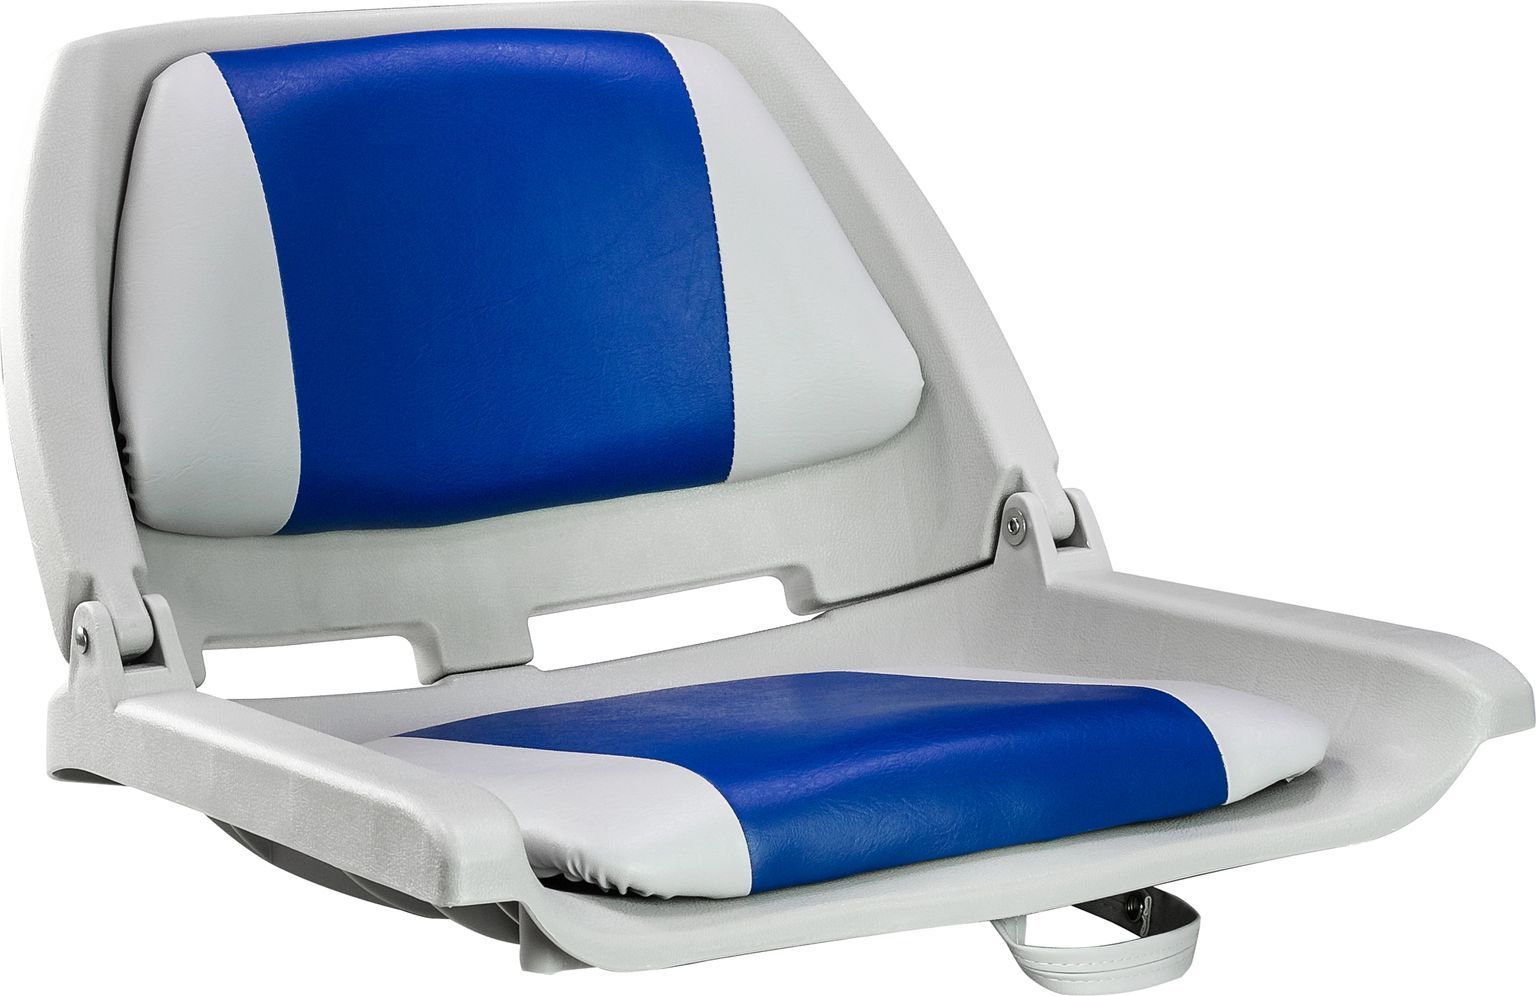 Кресло пластмассовое складное с подложкой Molded Fold-Down Boat Seat,серый/голубой 75109GB